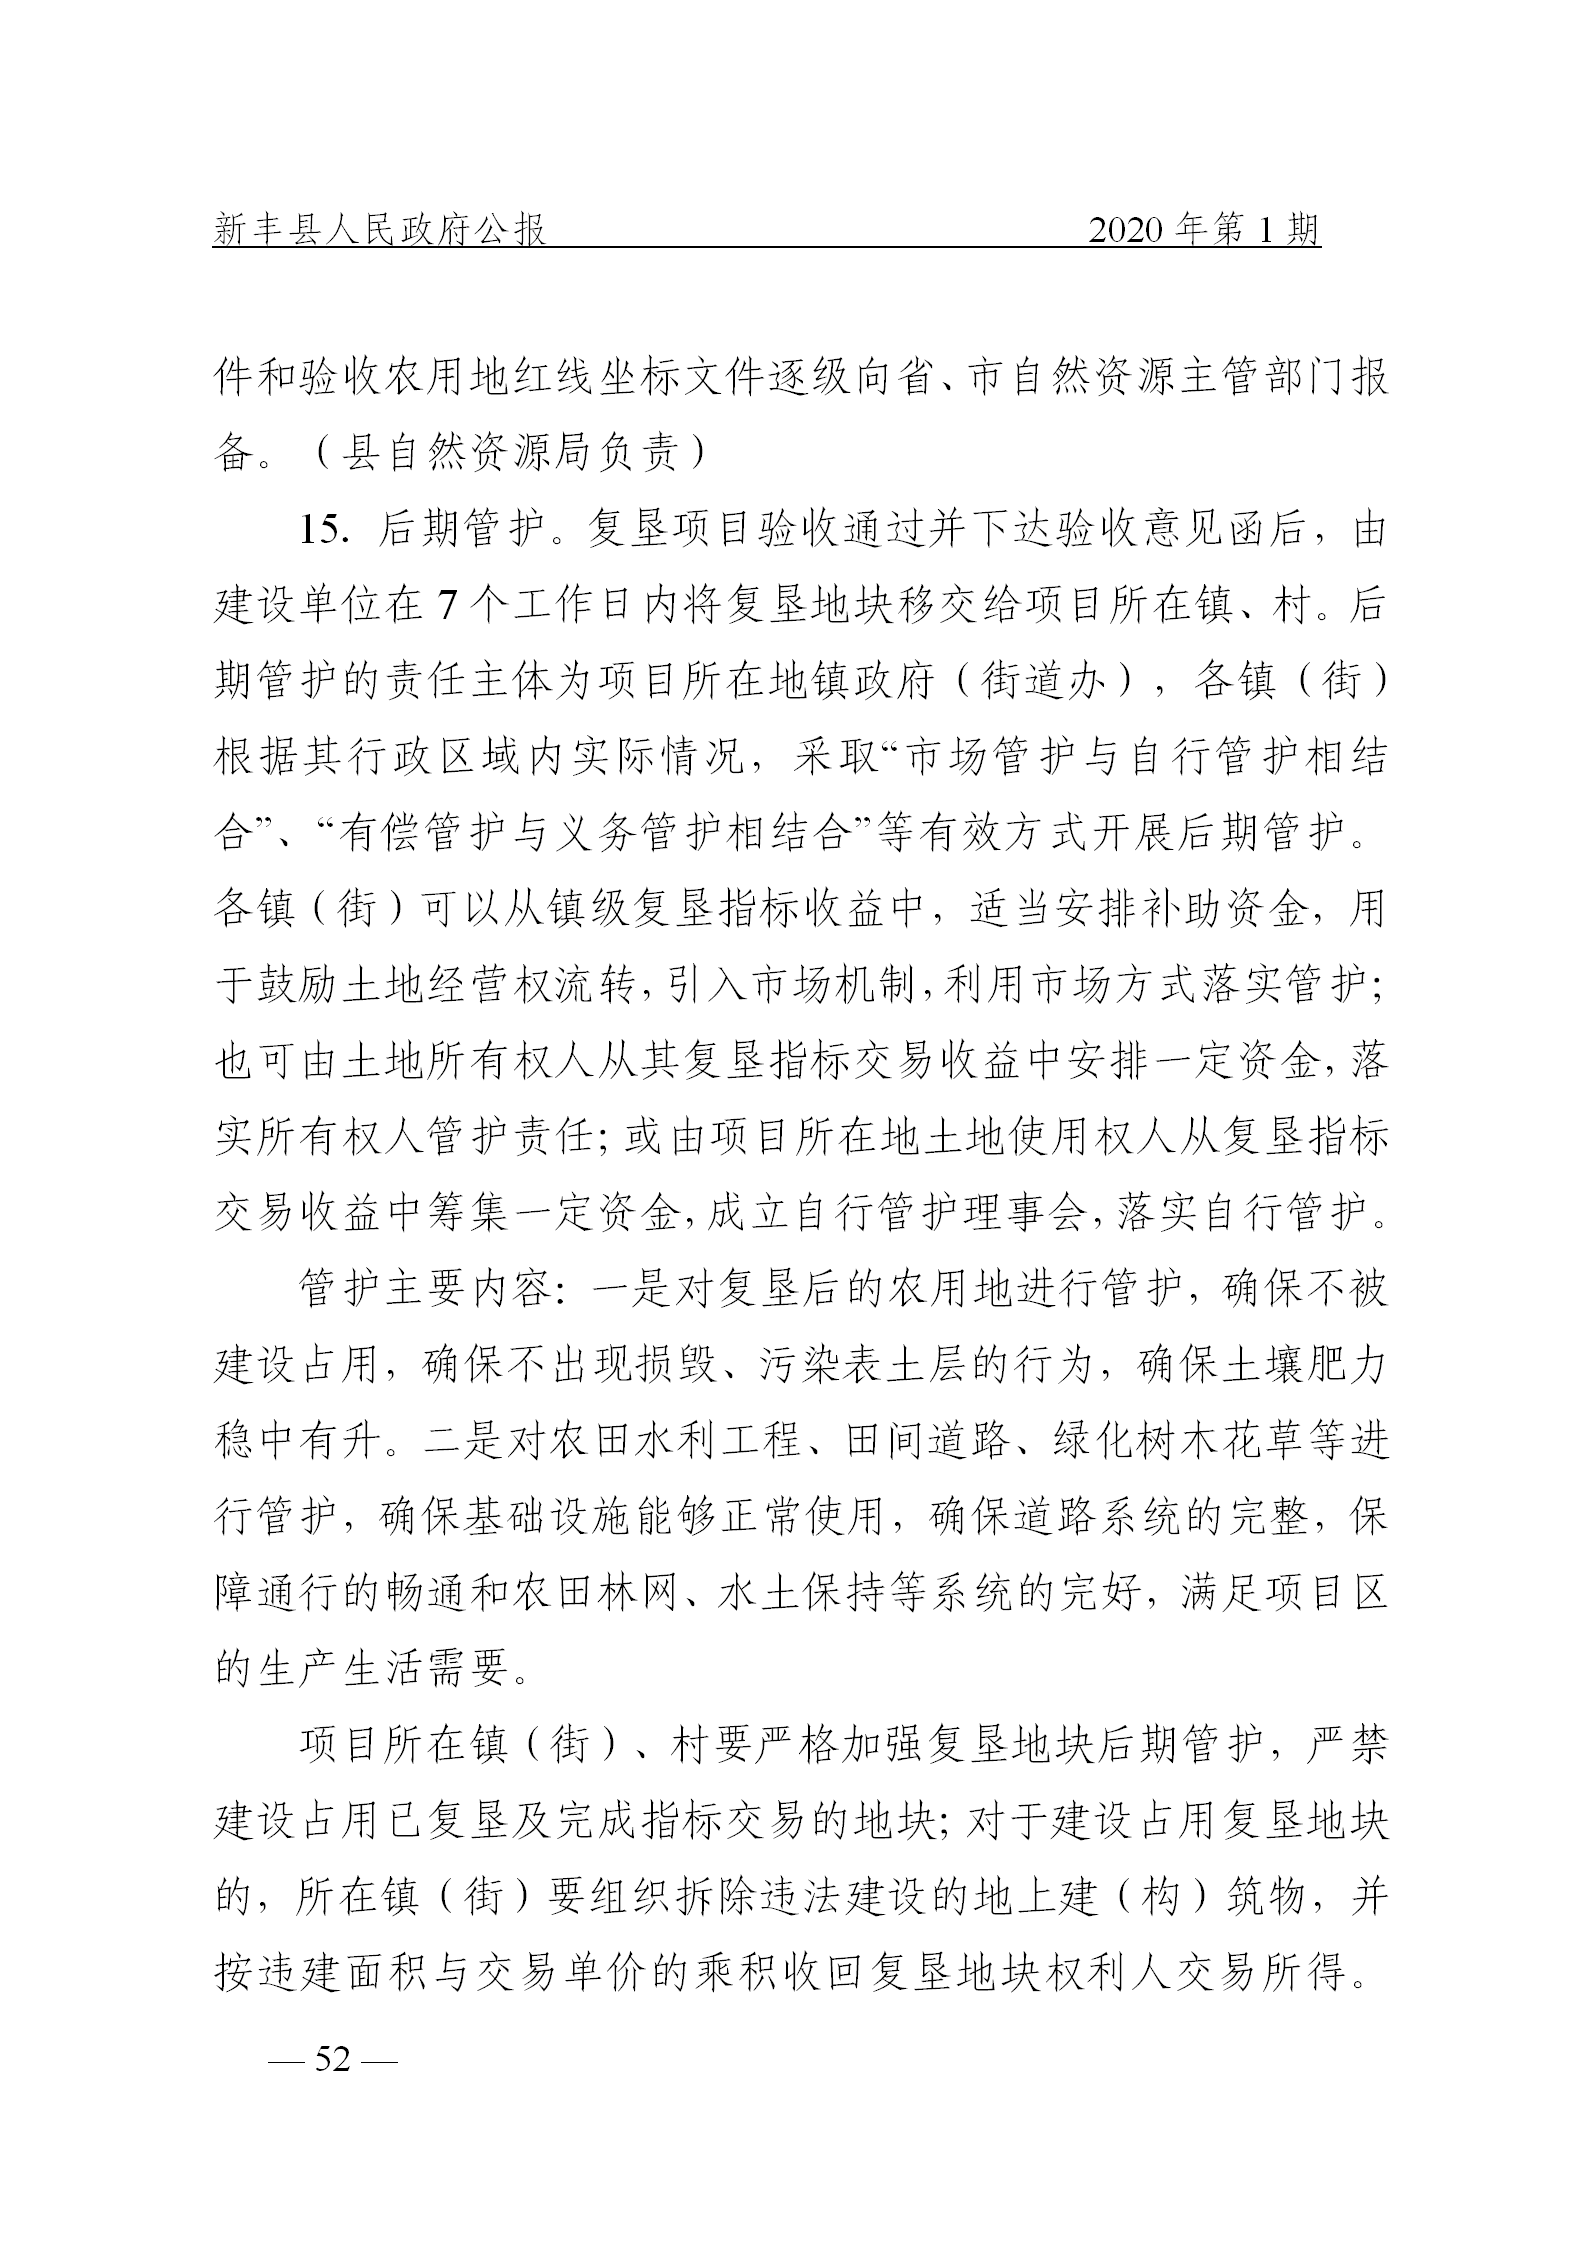 《新丰县人民政府公报》2020年第1期(1)_52.png